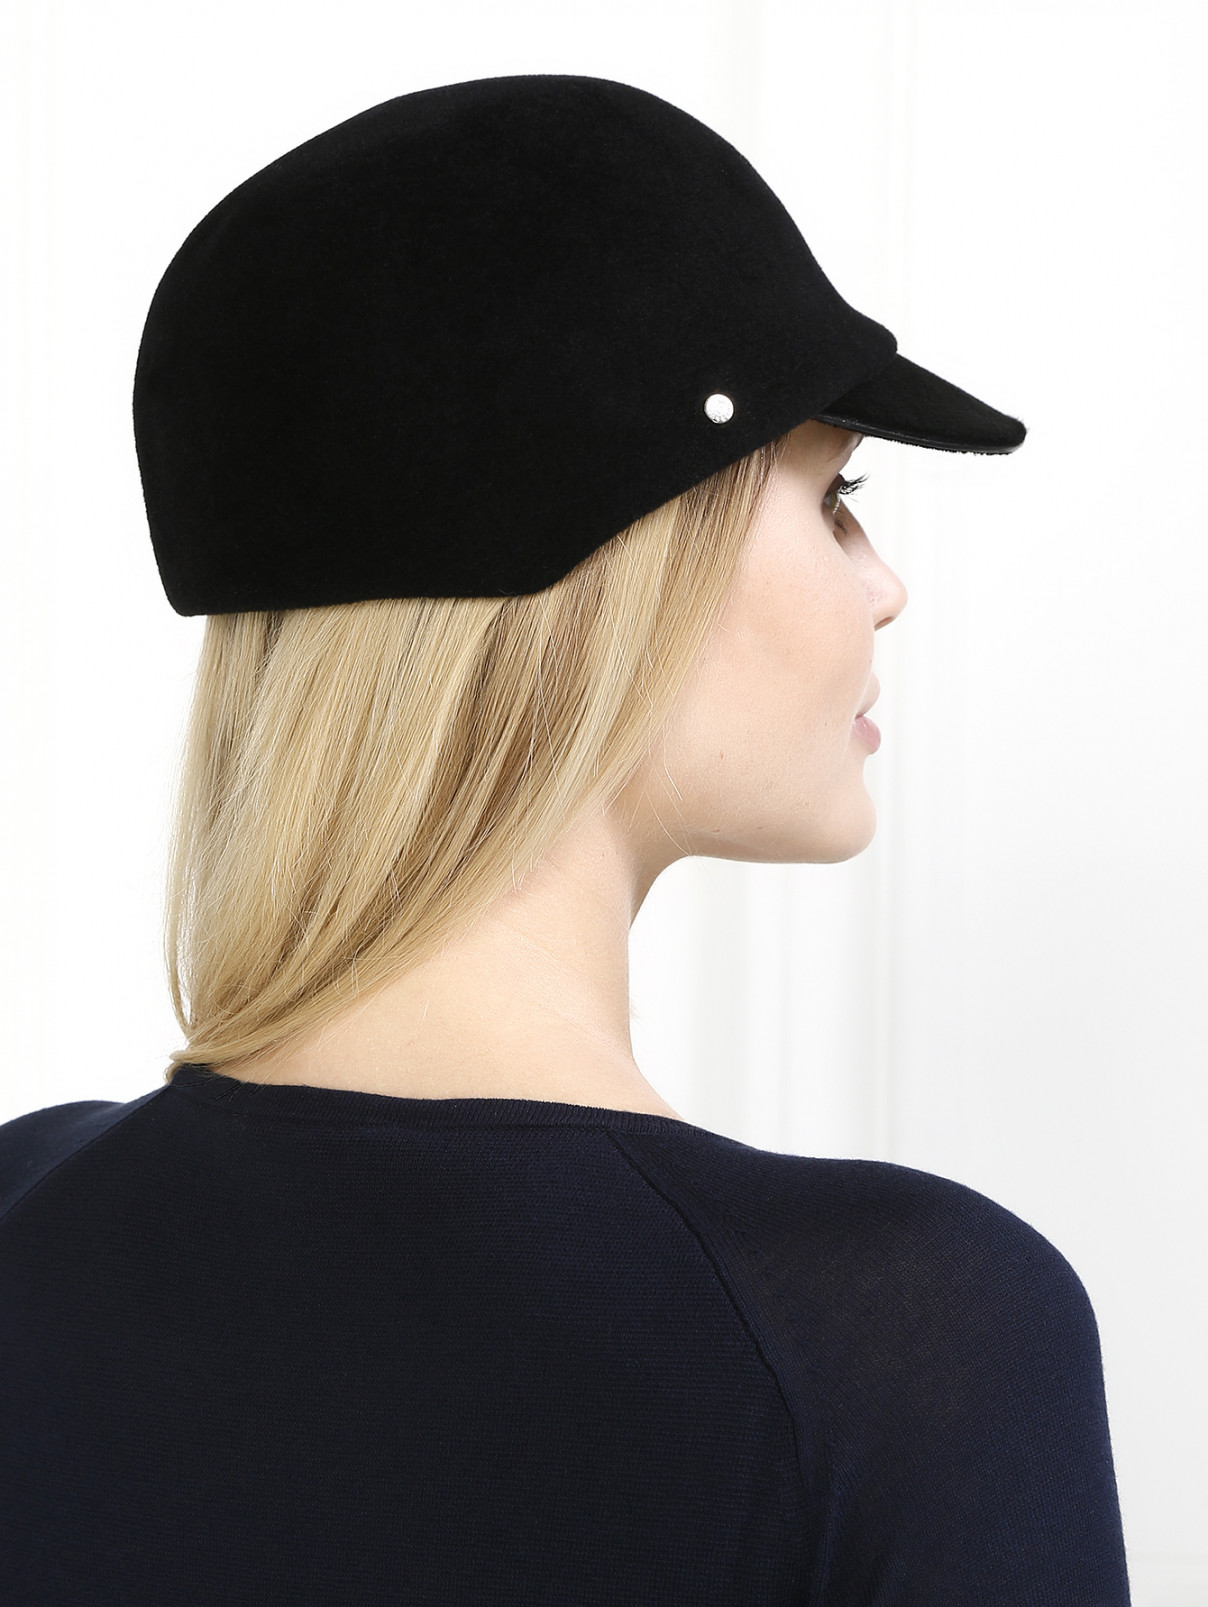 Шляпа из шерсти с козырьком Inverni  –  Модель Общий вид  – Цвет:  Черный